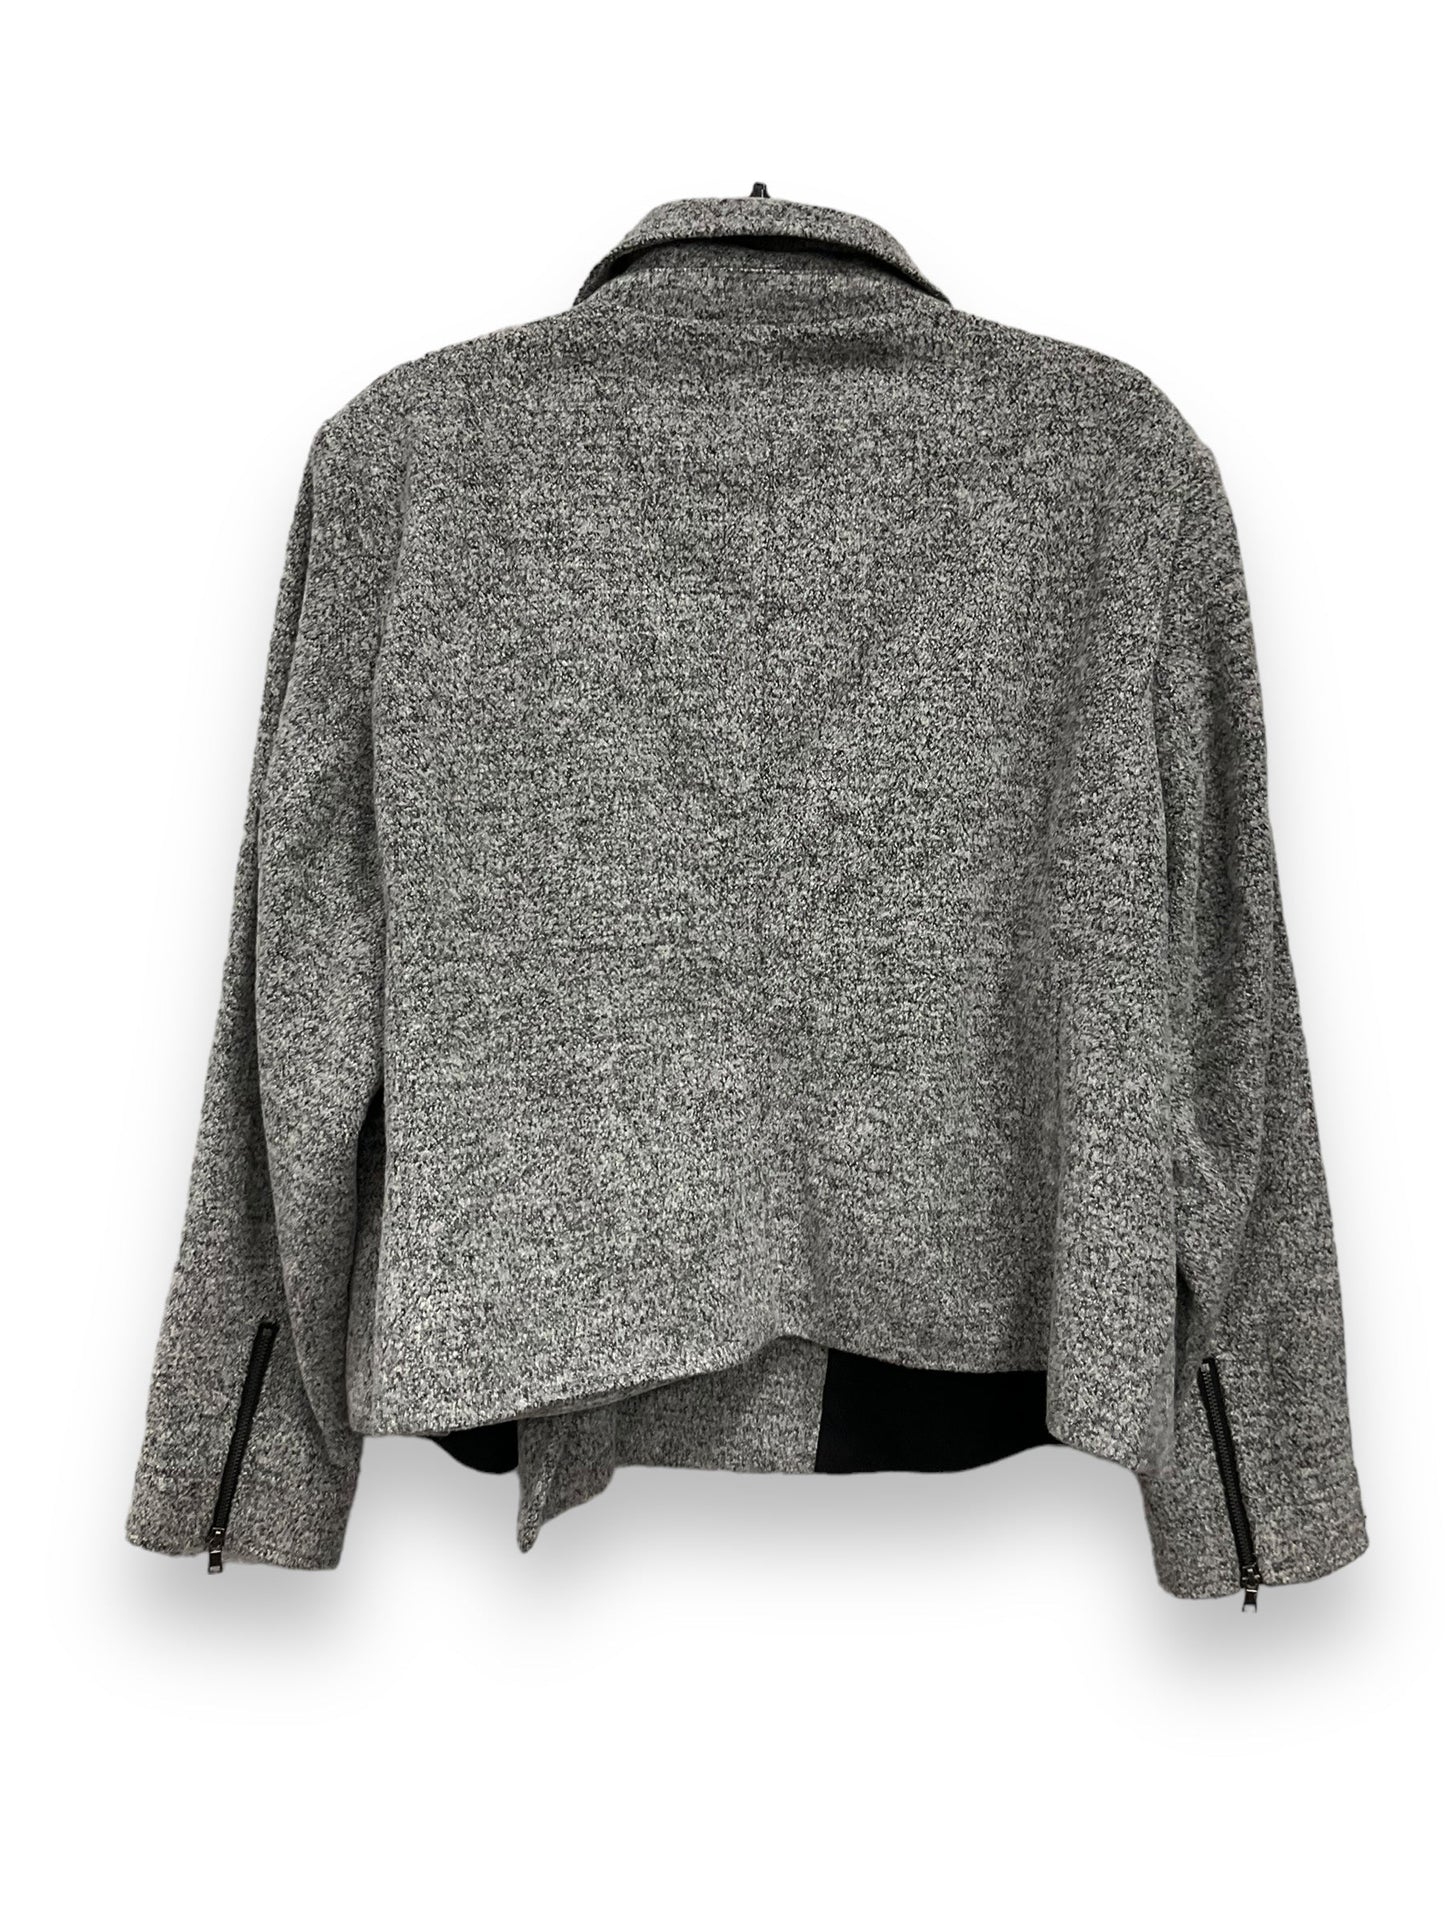 Grey Jacket Moto Loft, Size 2x